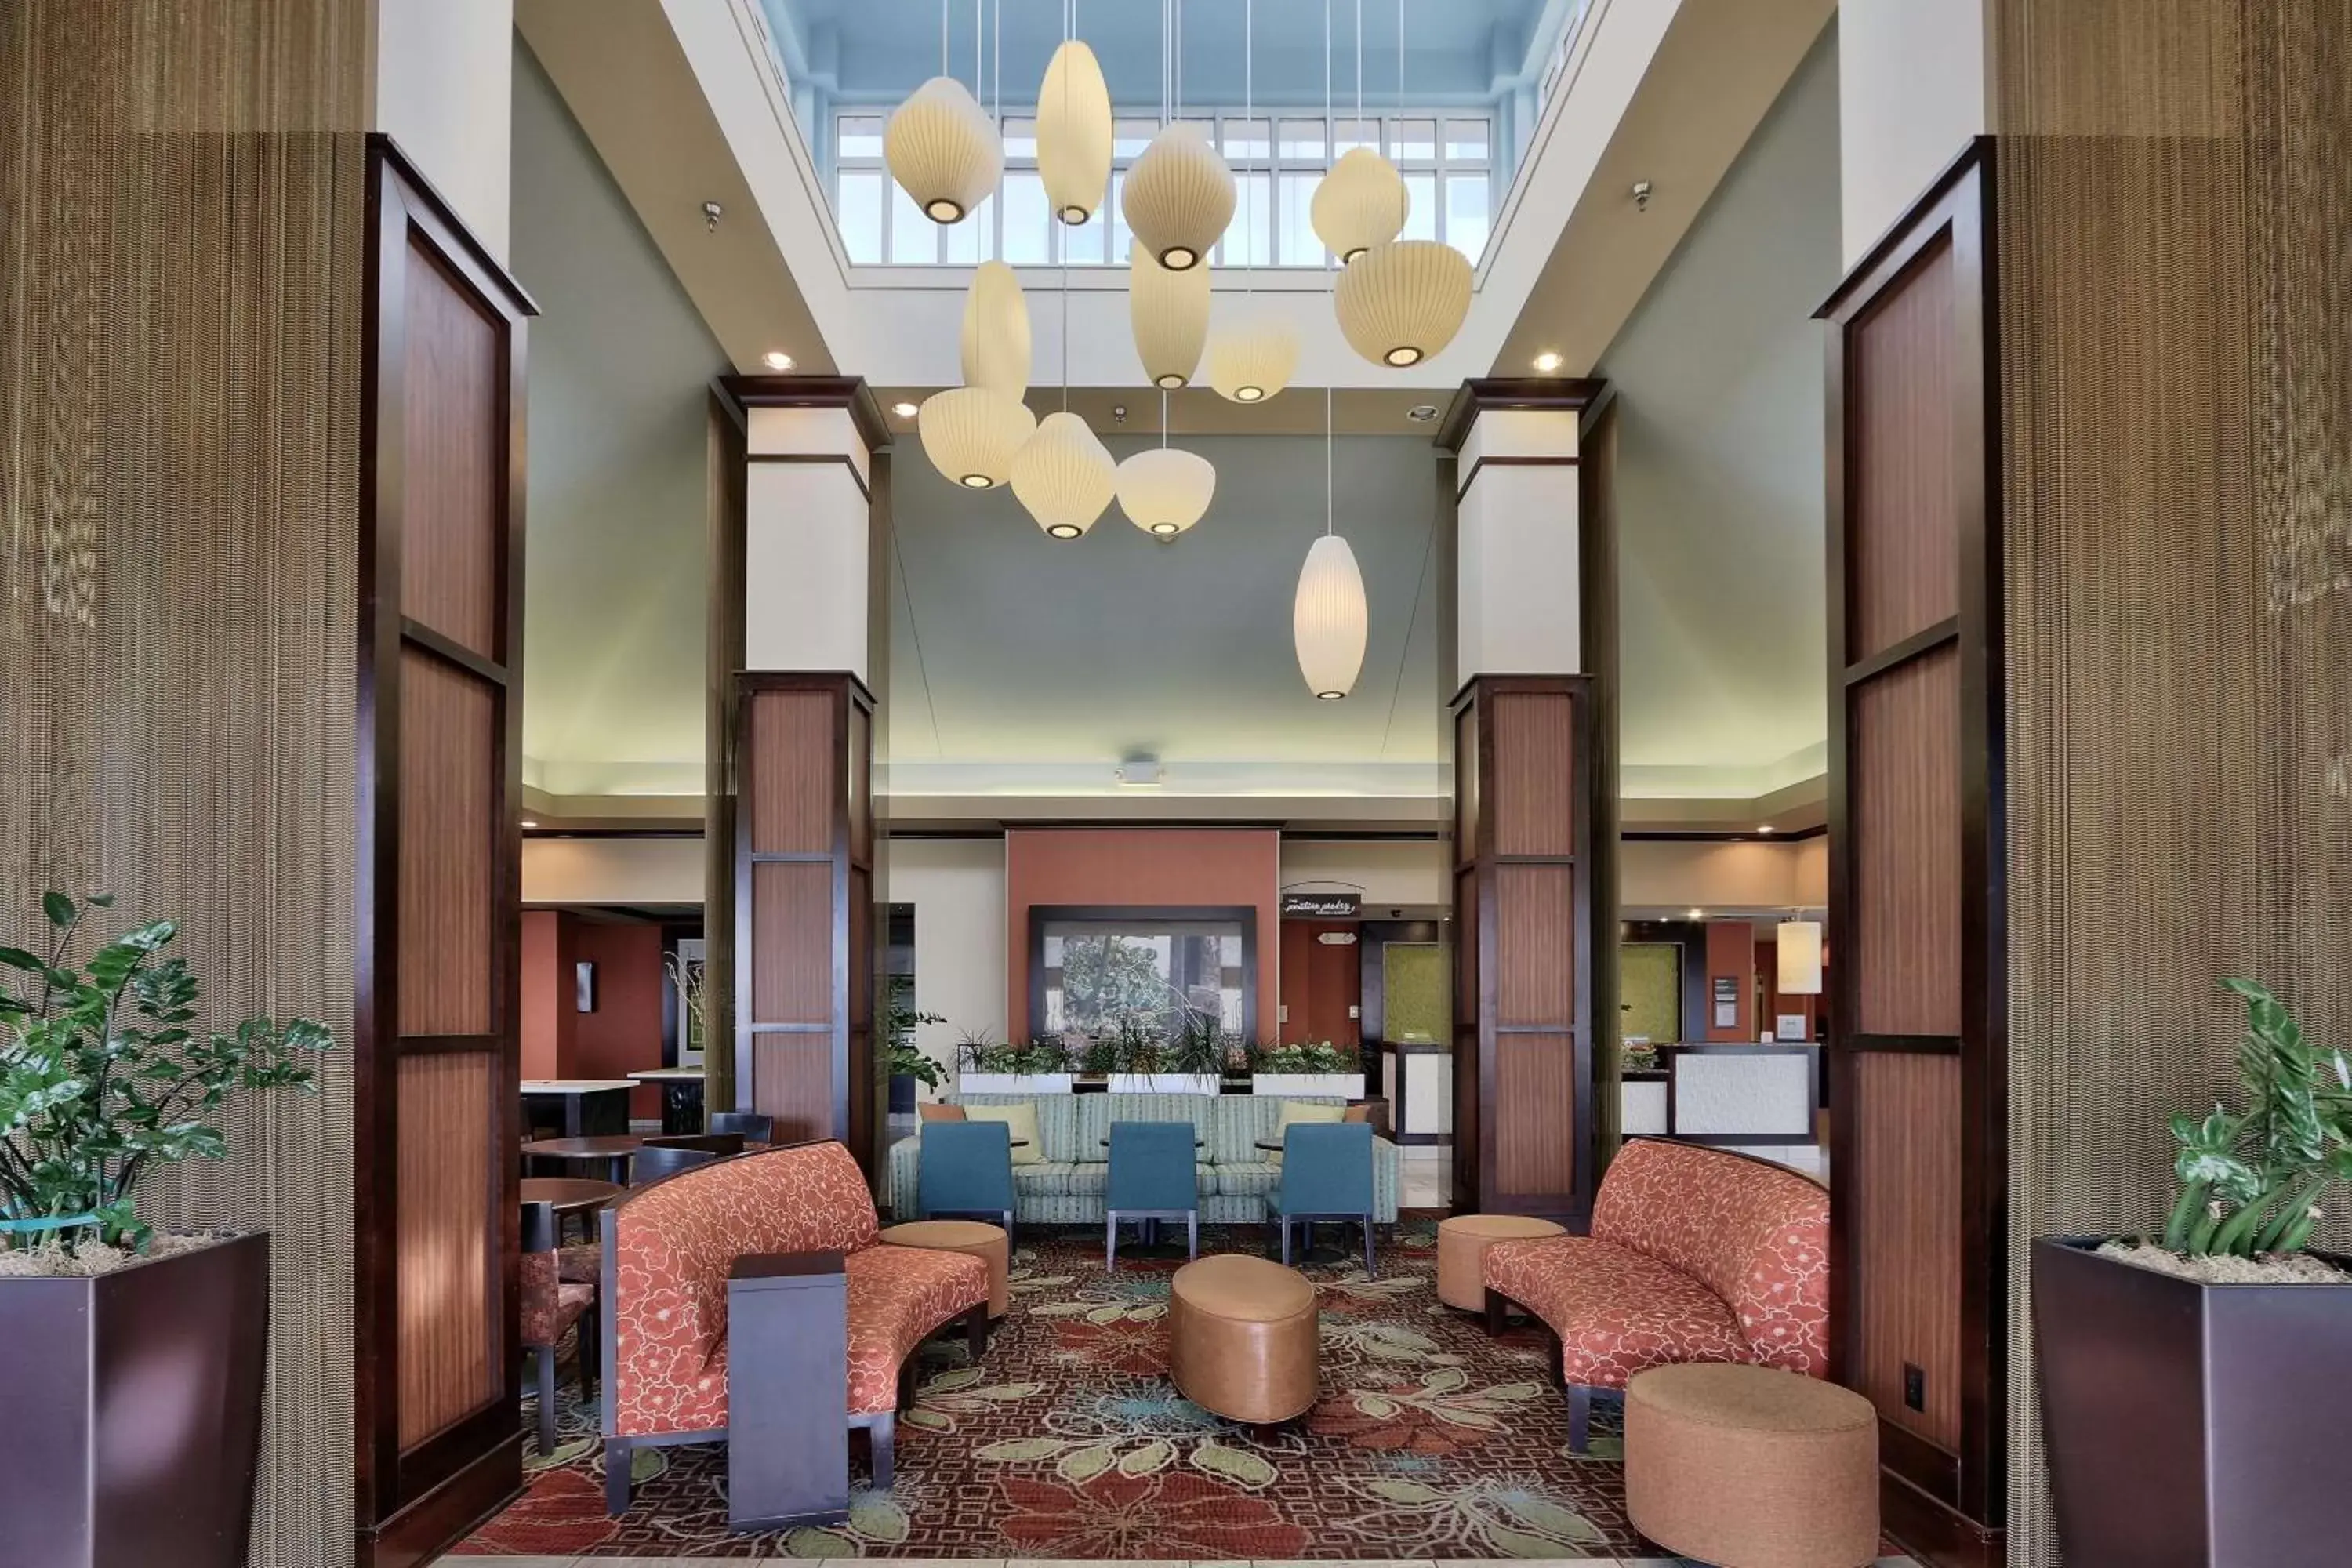 Lobby or reception, Lounge/Bar in Hilton Garden Inn Albuquerque Airport